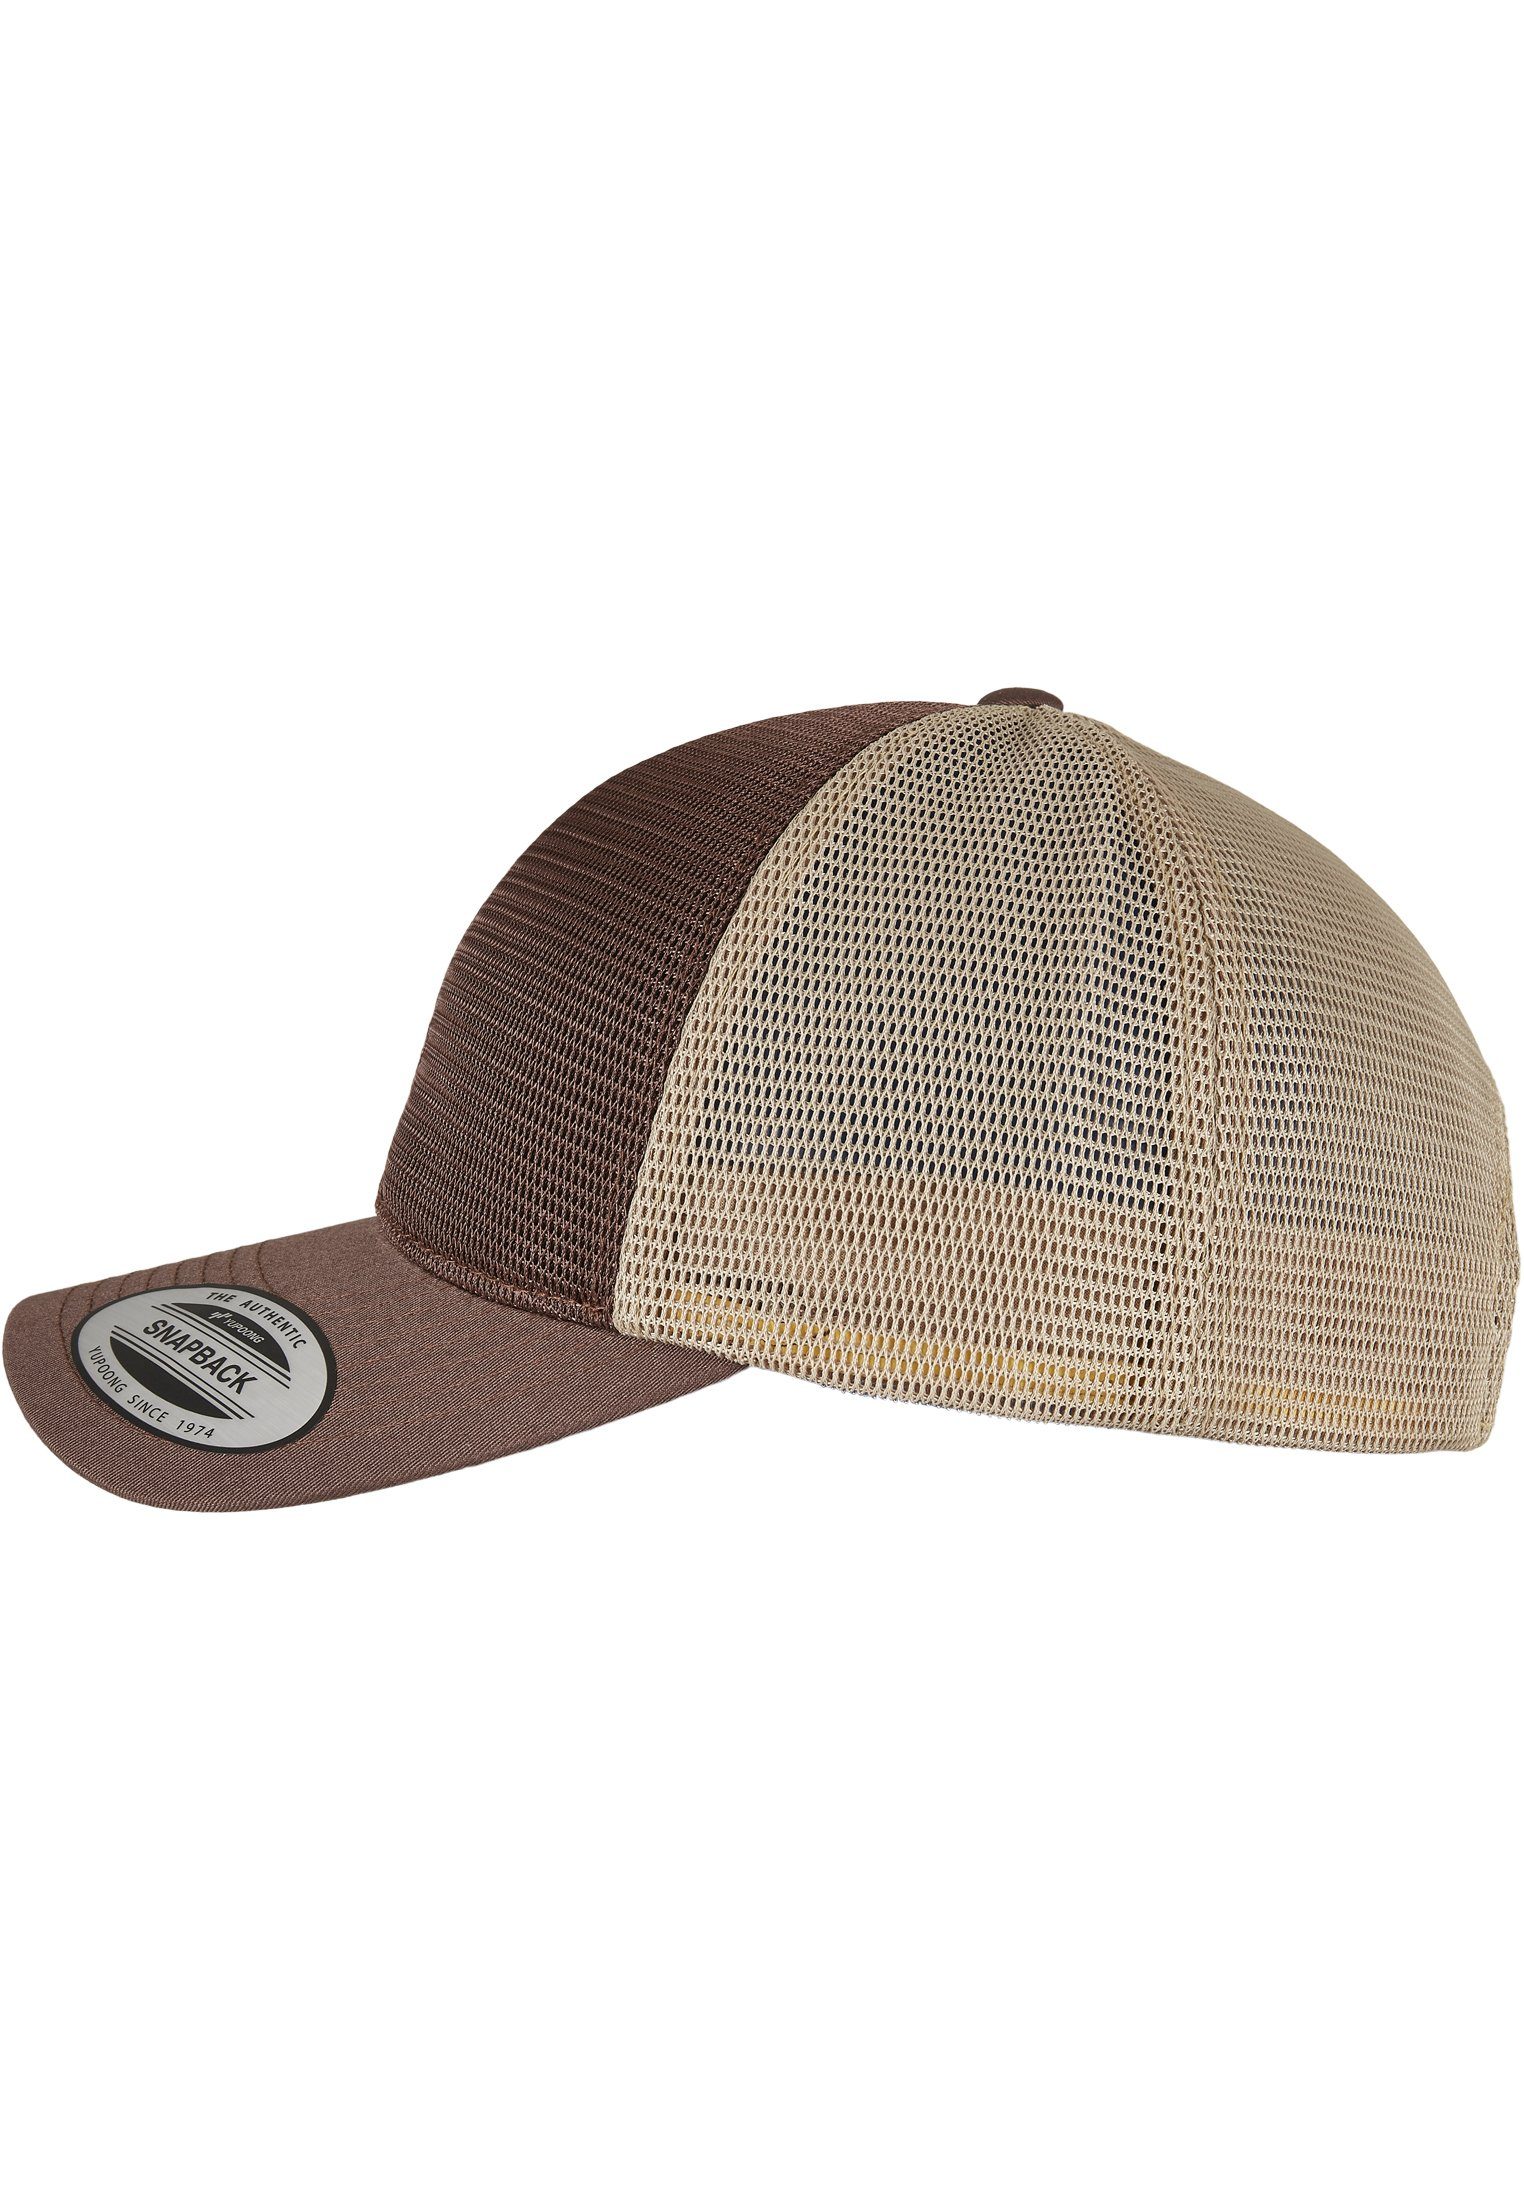 Flexfit Flex Cap Accessoires 360° brown/khaki Omnimesh 2-Tone Cap